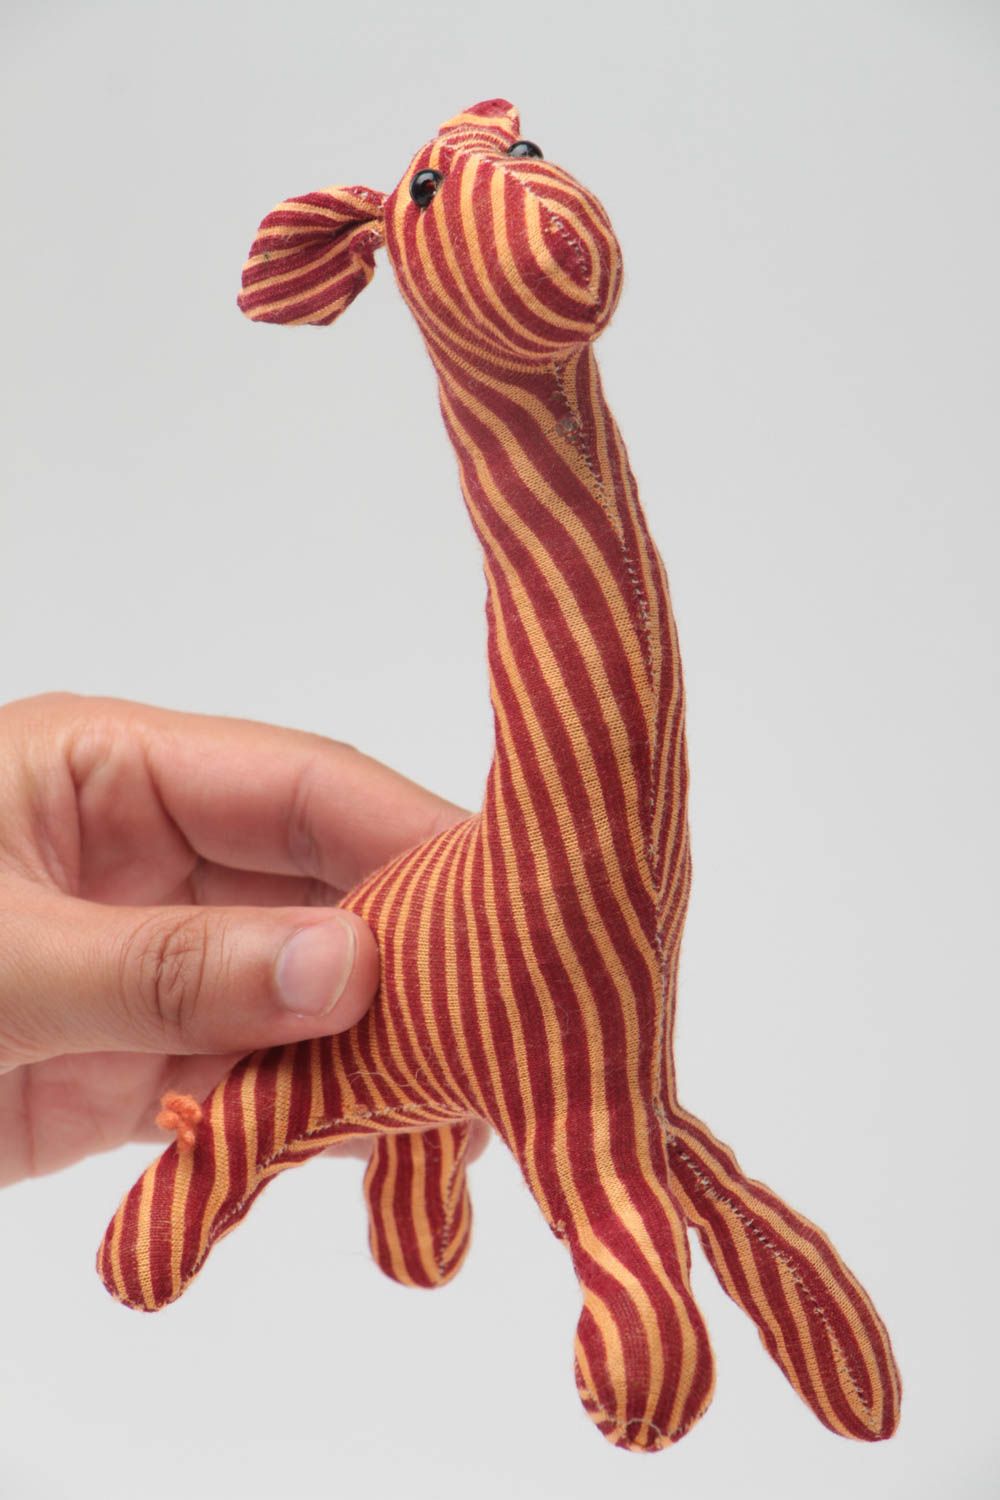 Handmade Stoff Kuscheltier Giraffe weich gestreift lustig schön für Kinder foto 5